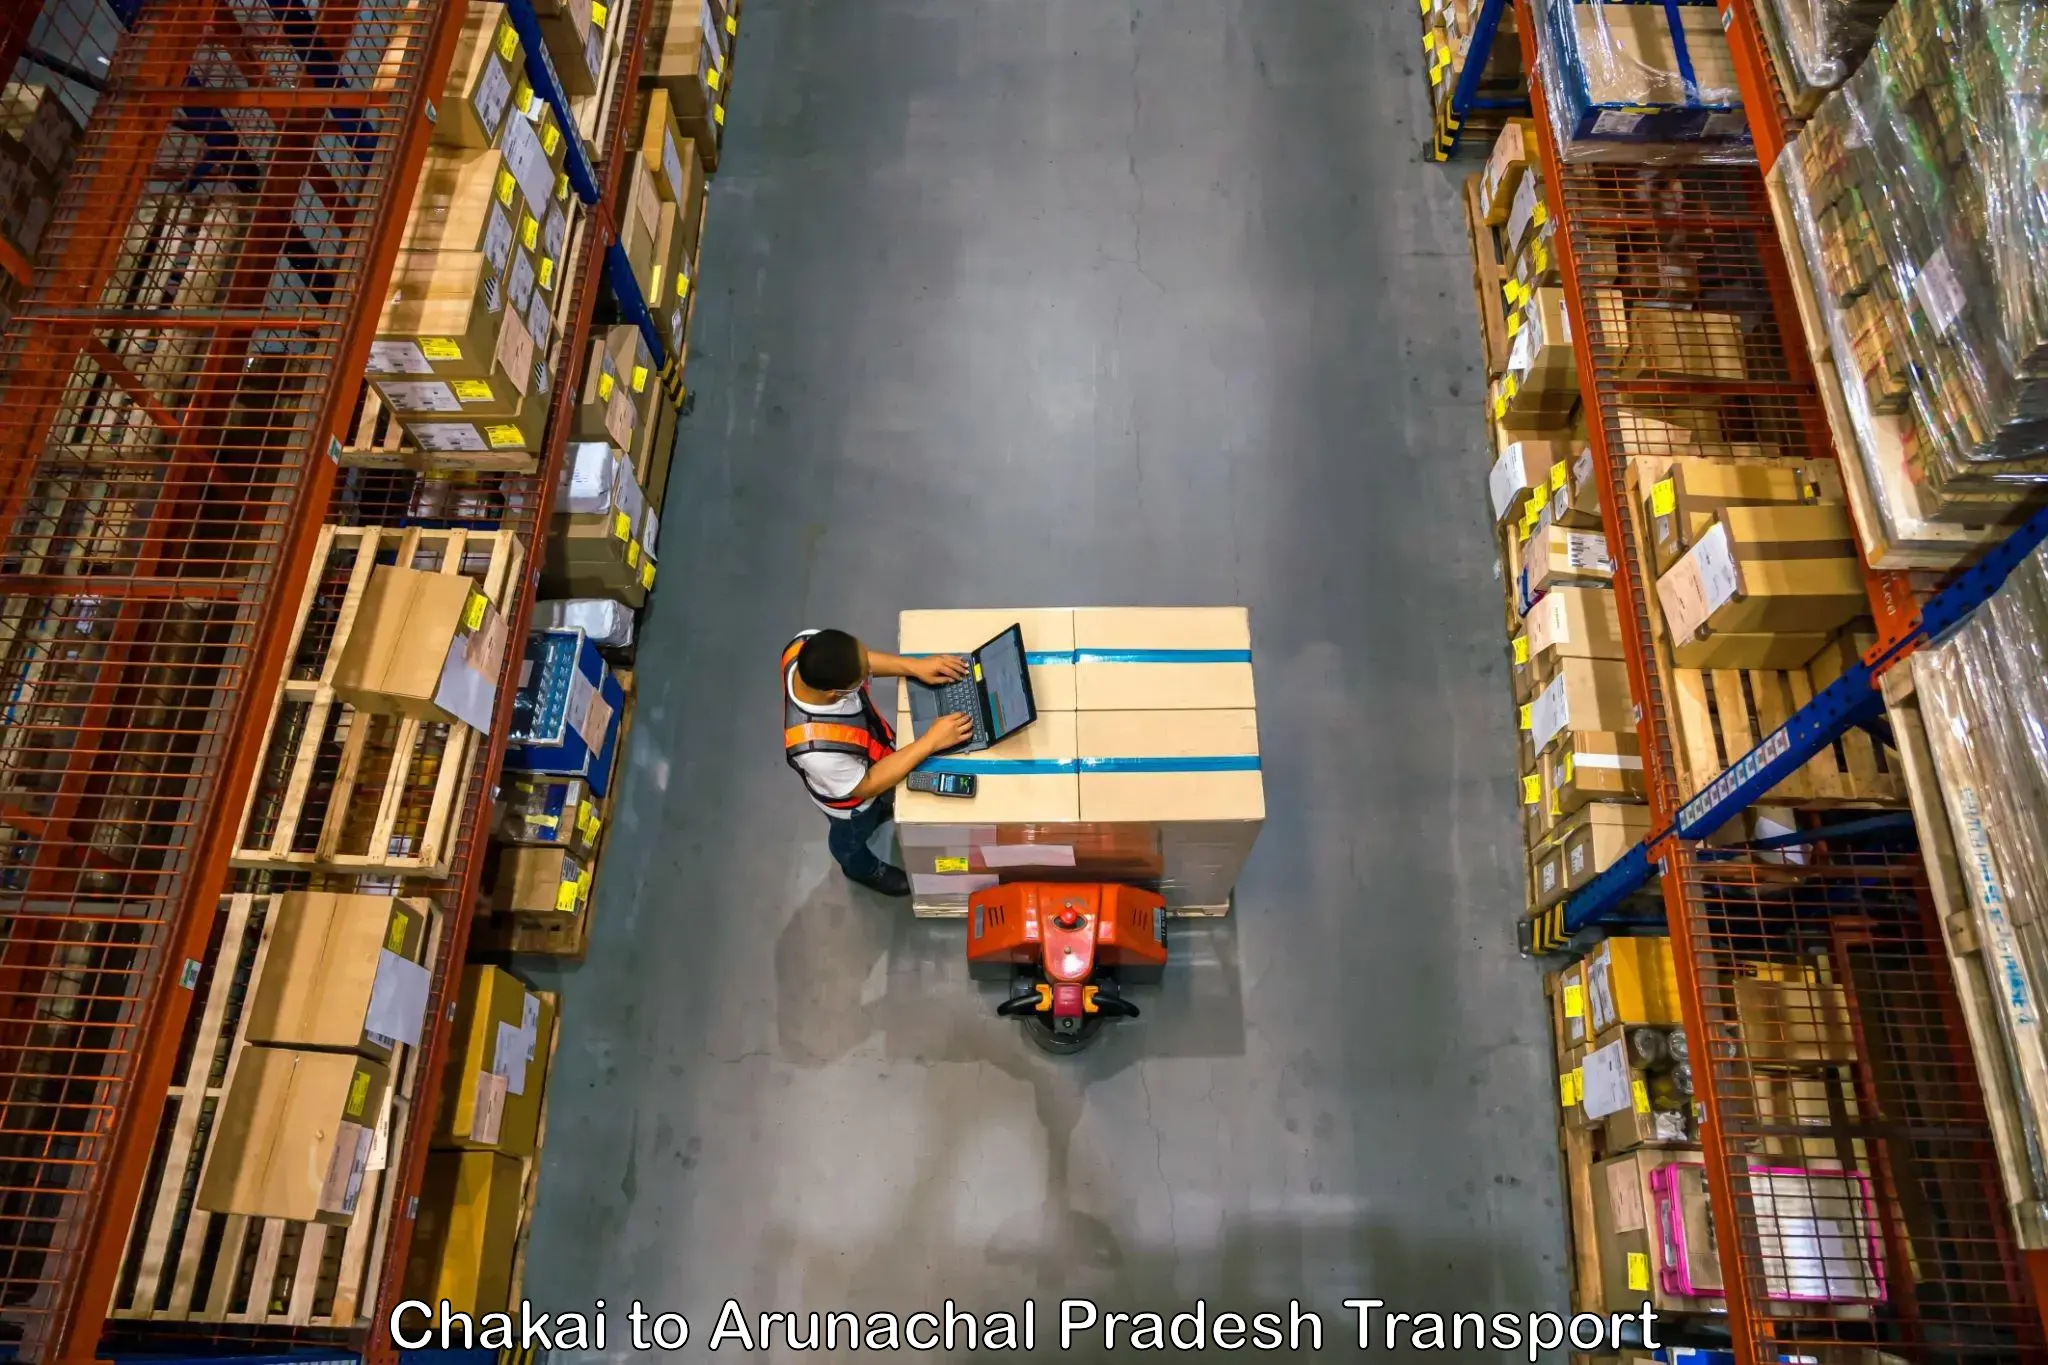 Lorry transport service Chakai to Arunachal Pradesh